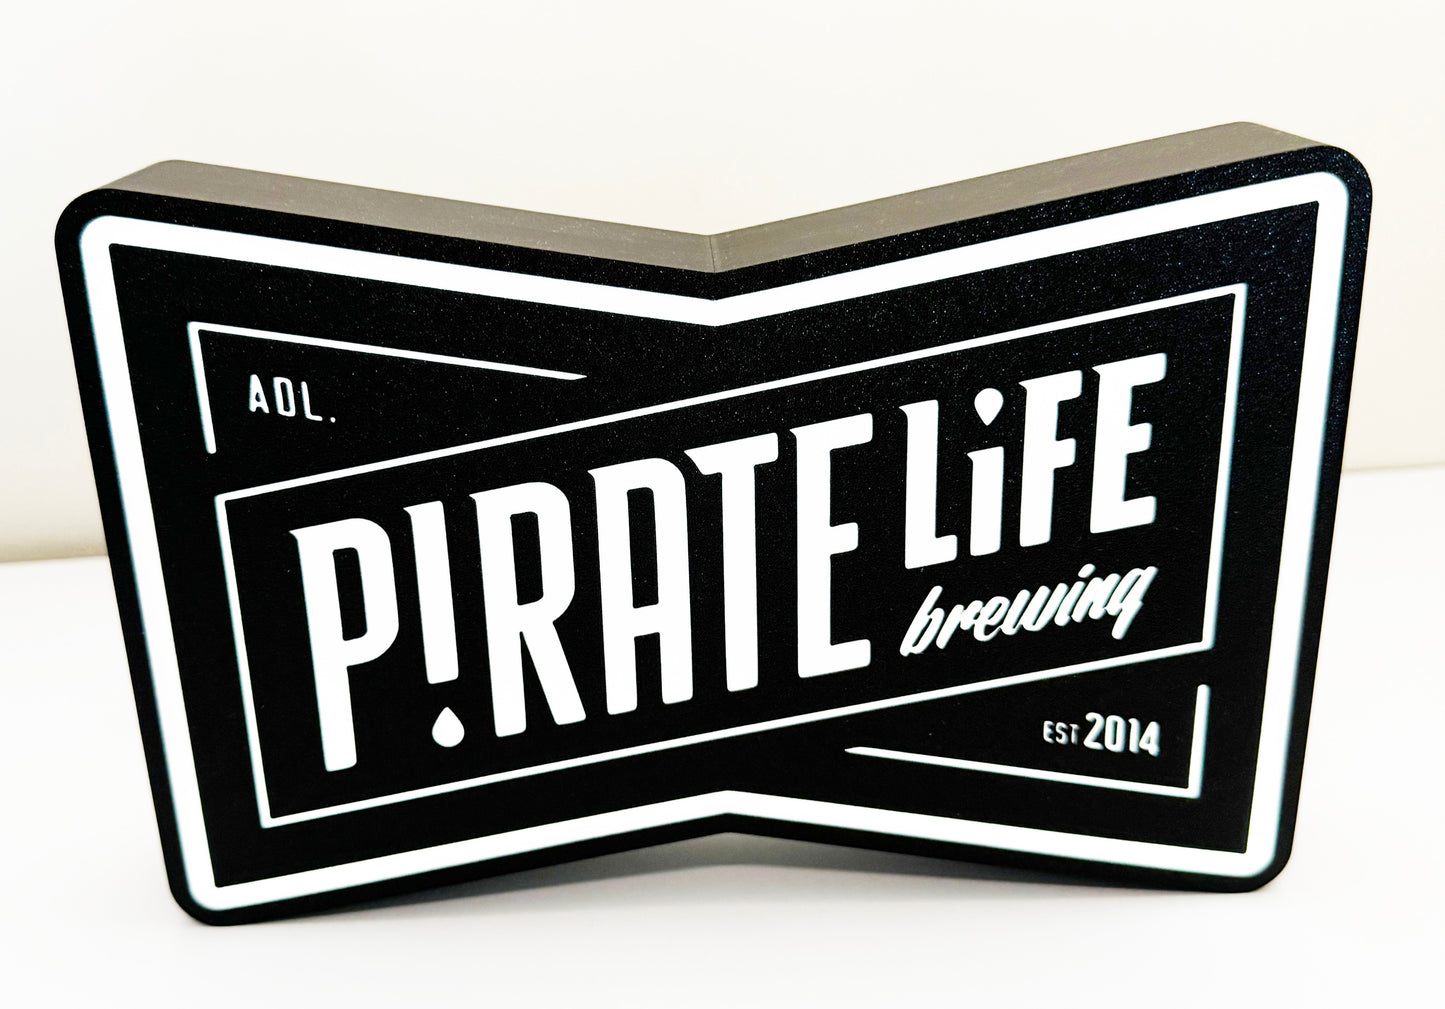 Pirate life led light box